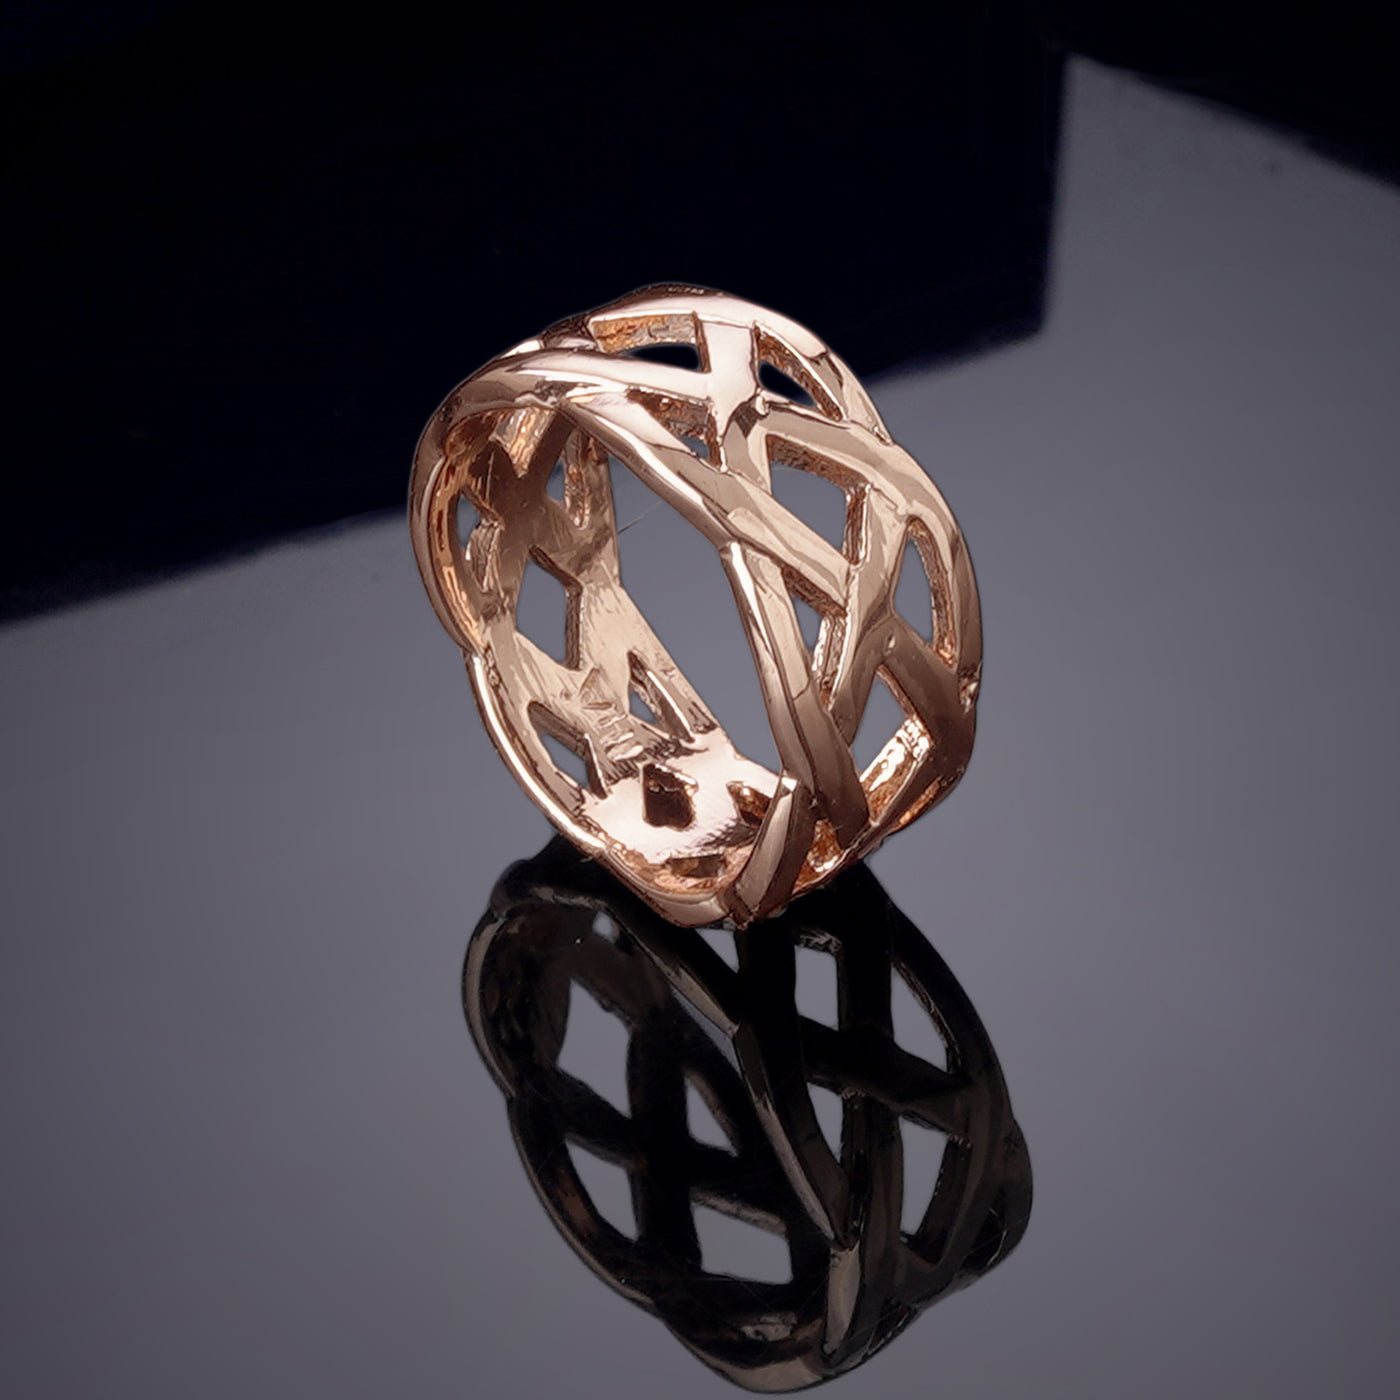 Estele Rose Gold Plated Nestled Designer Finger Ring for Women